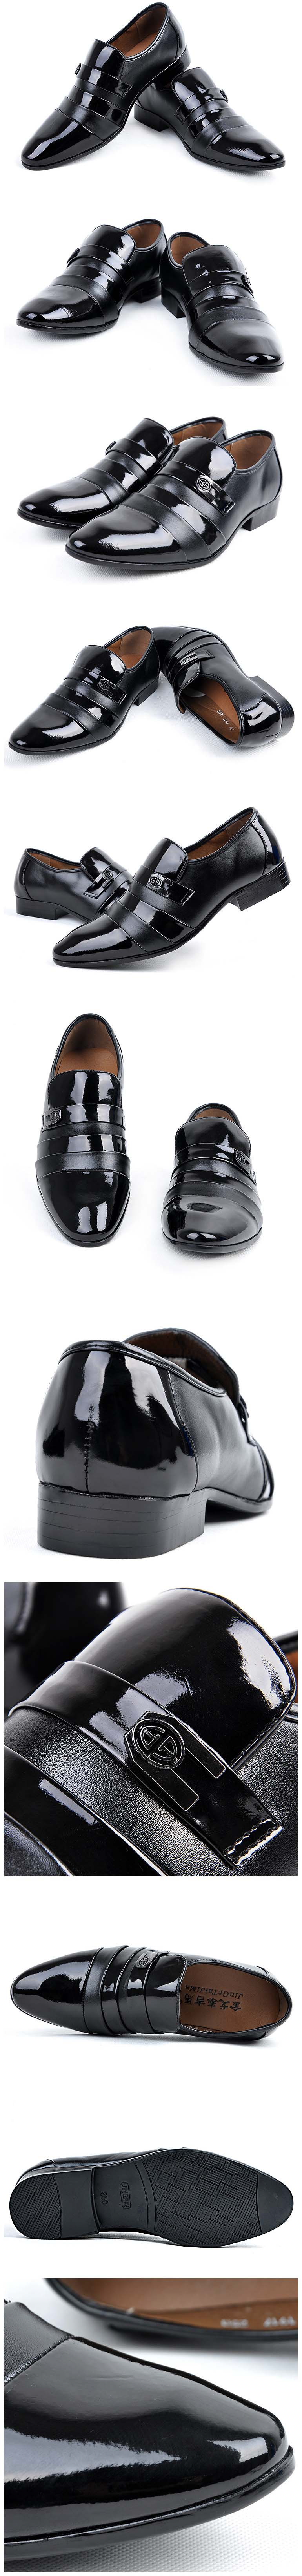 jual sepatu kantor pria model terbaru dengan tampilan glossy membuat anda tampil elegant cocok dipakai ke kerja ke kantor